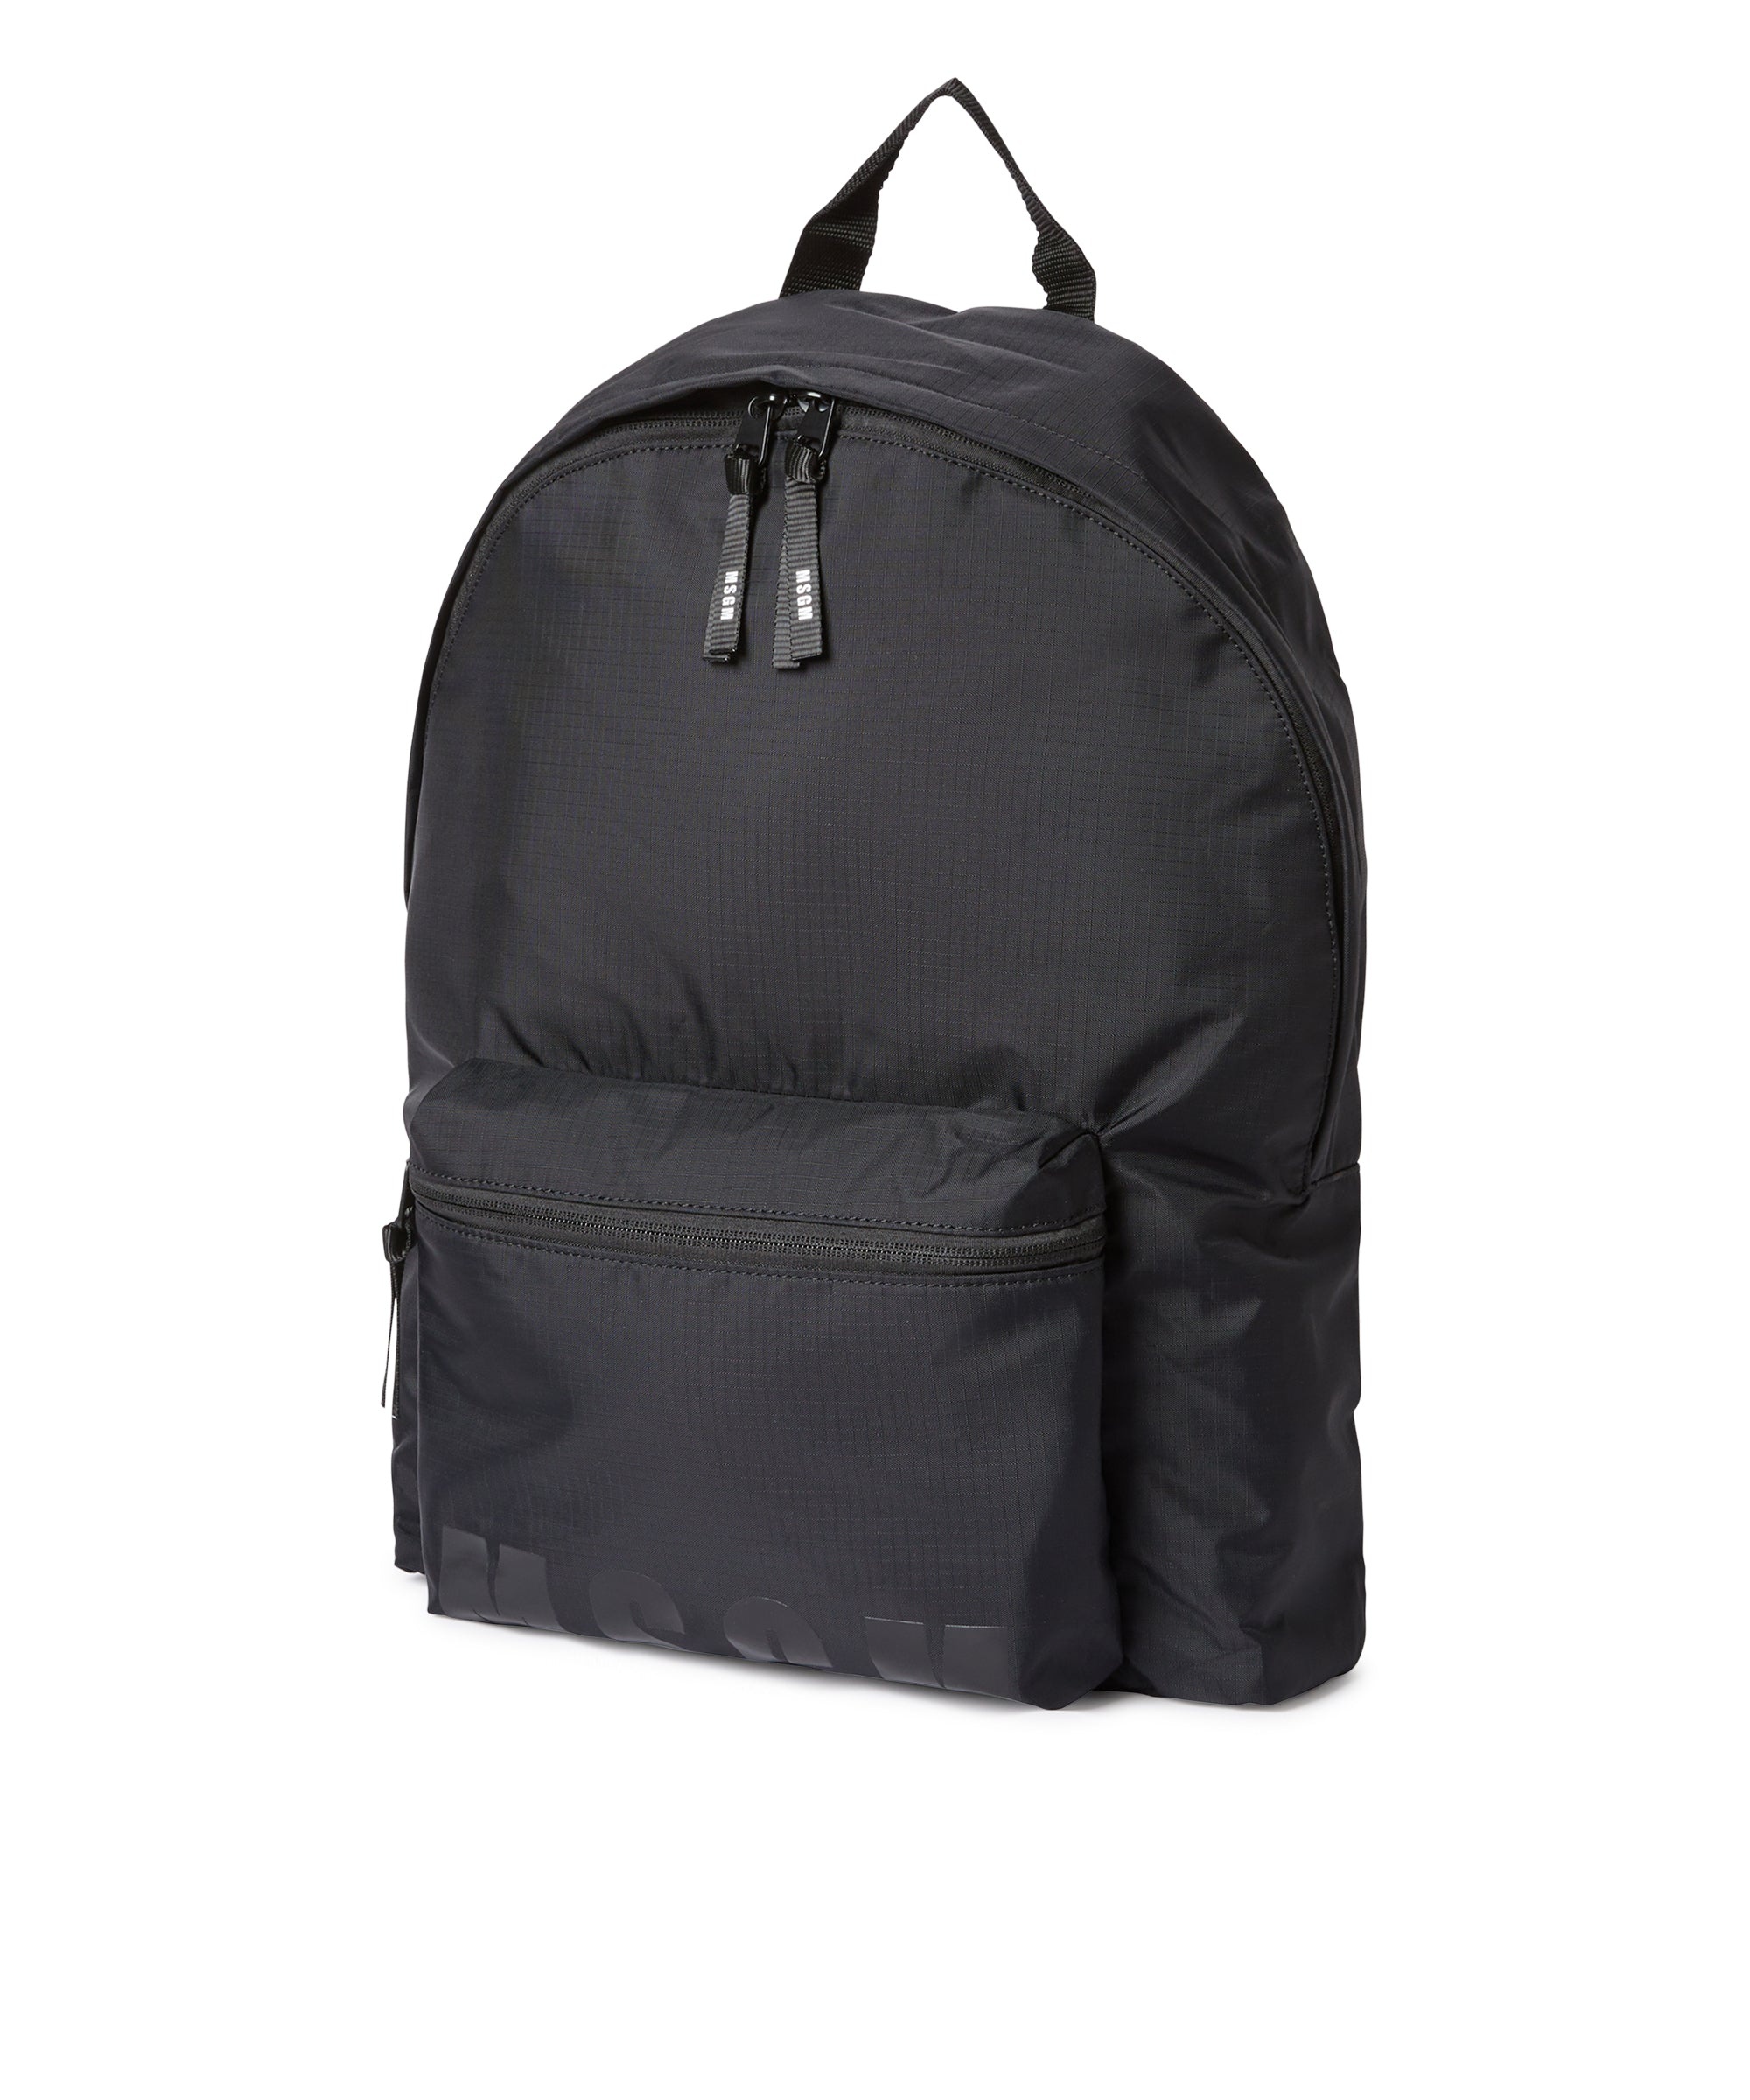 "Signature Iconic Nylon" backpack - 3